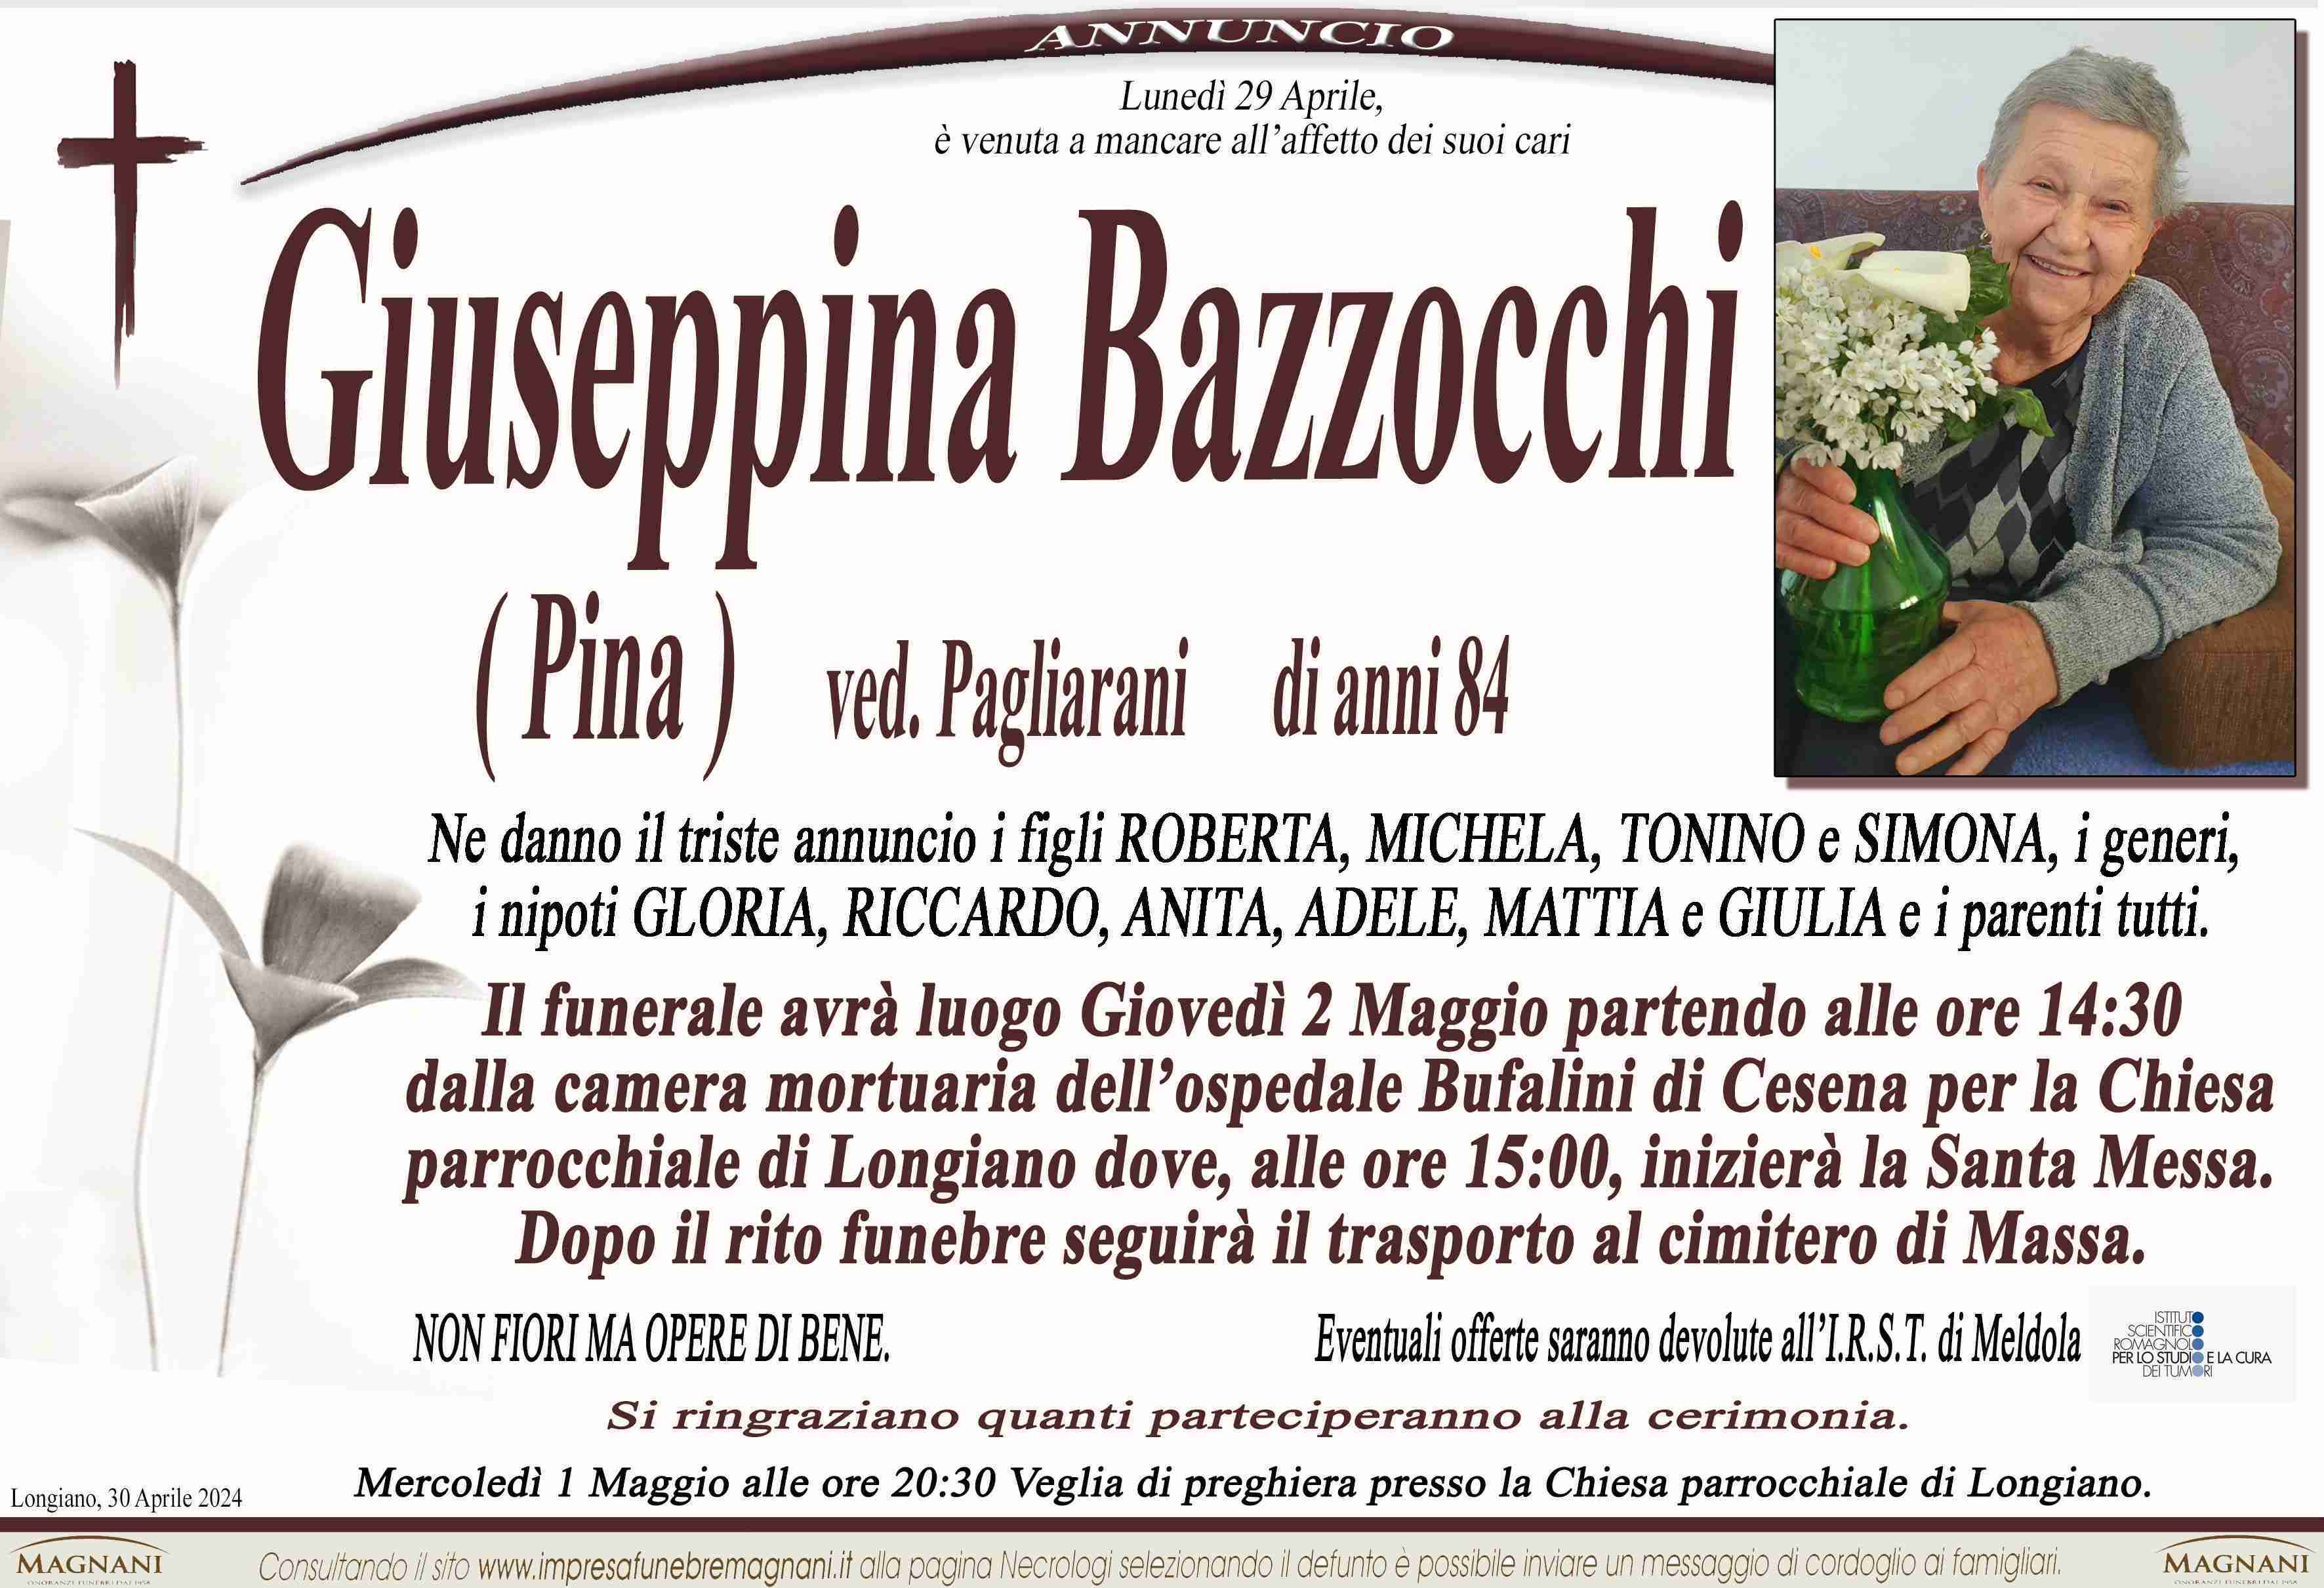 Giuseppina Bazzocchi